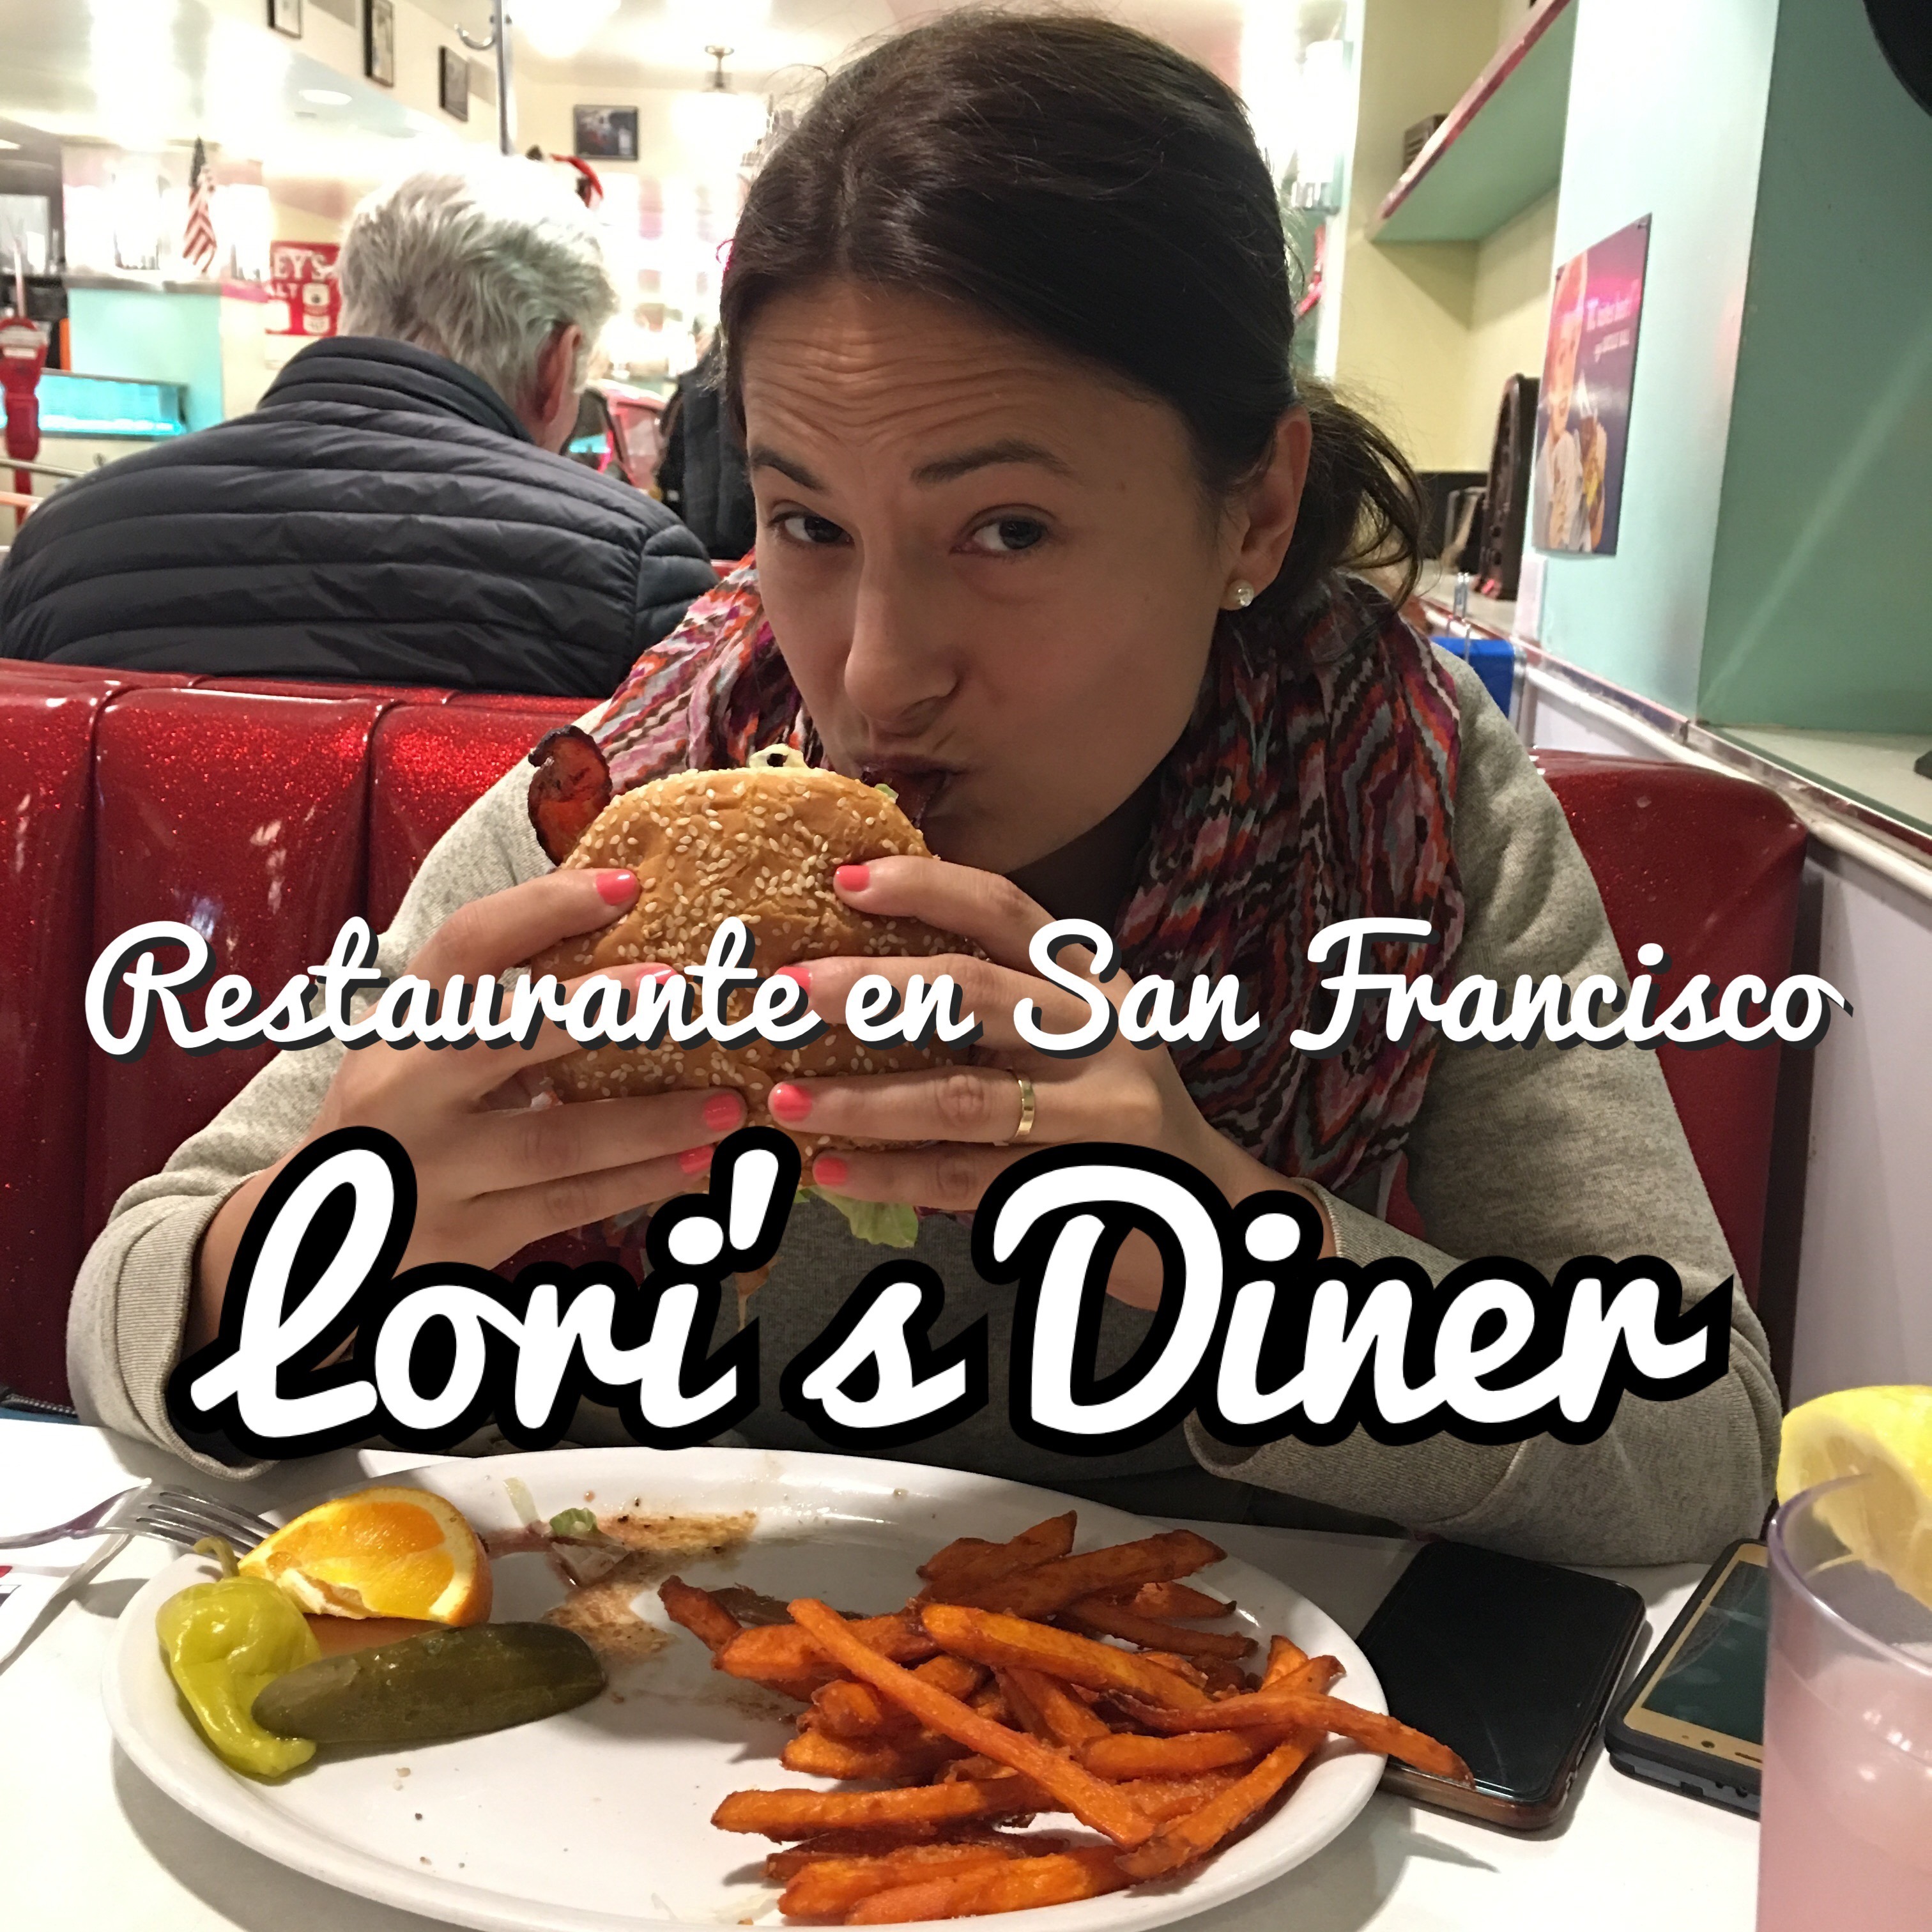 Loris Diner